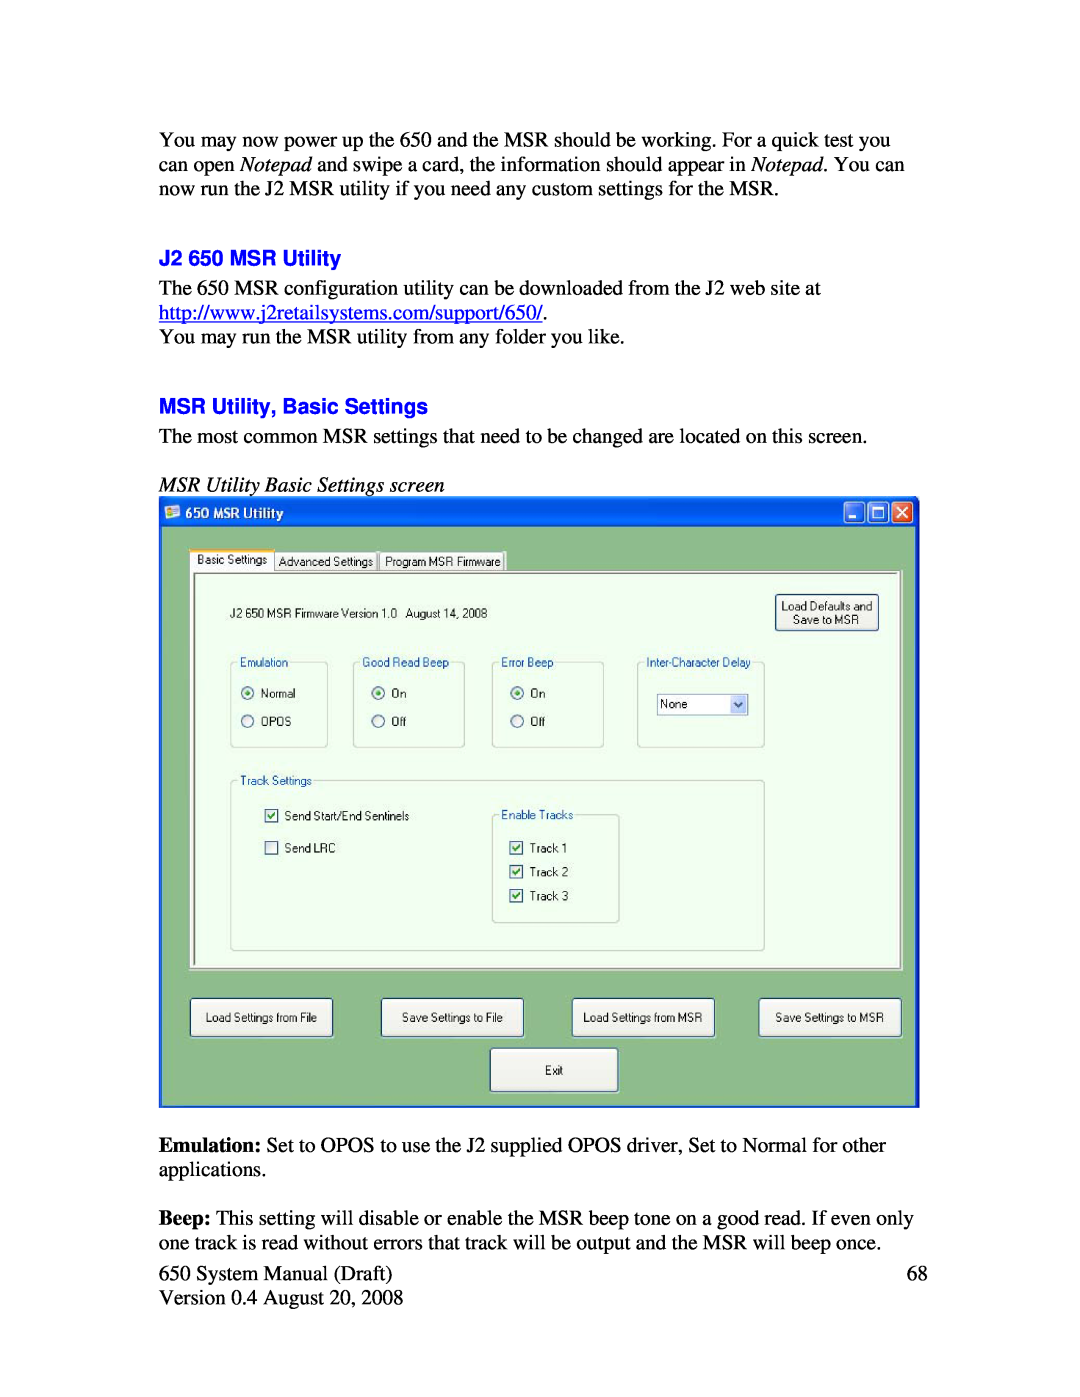 Intel system manual J2 650 MSR Utility, MSR Utility, Basic Settings, MSR Utility Basic Settings screen 